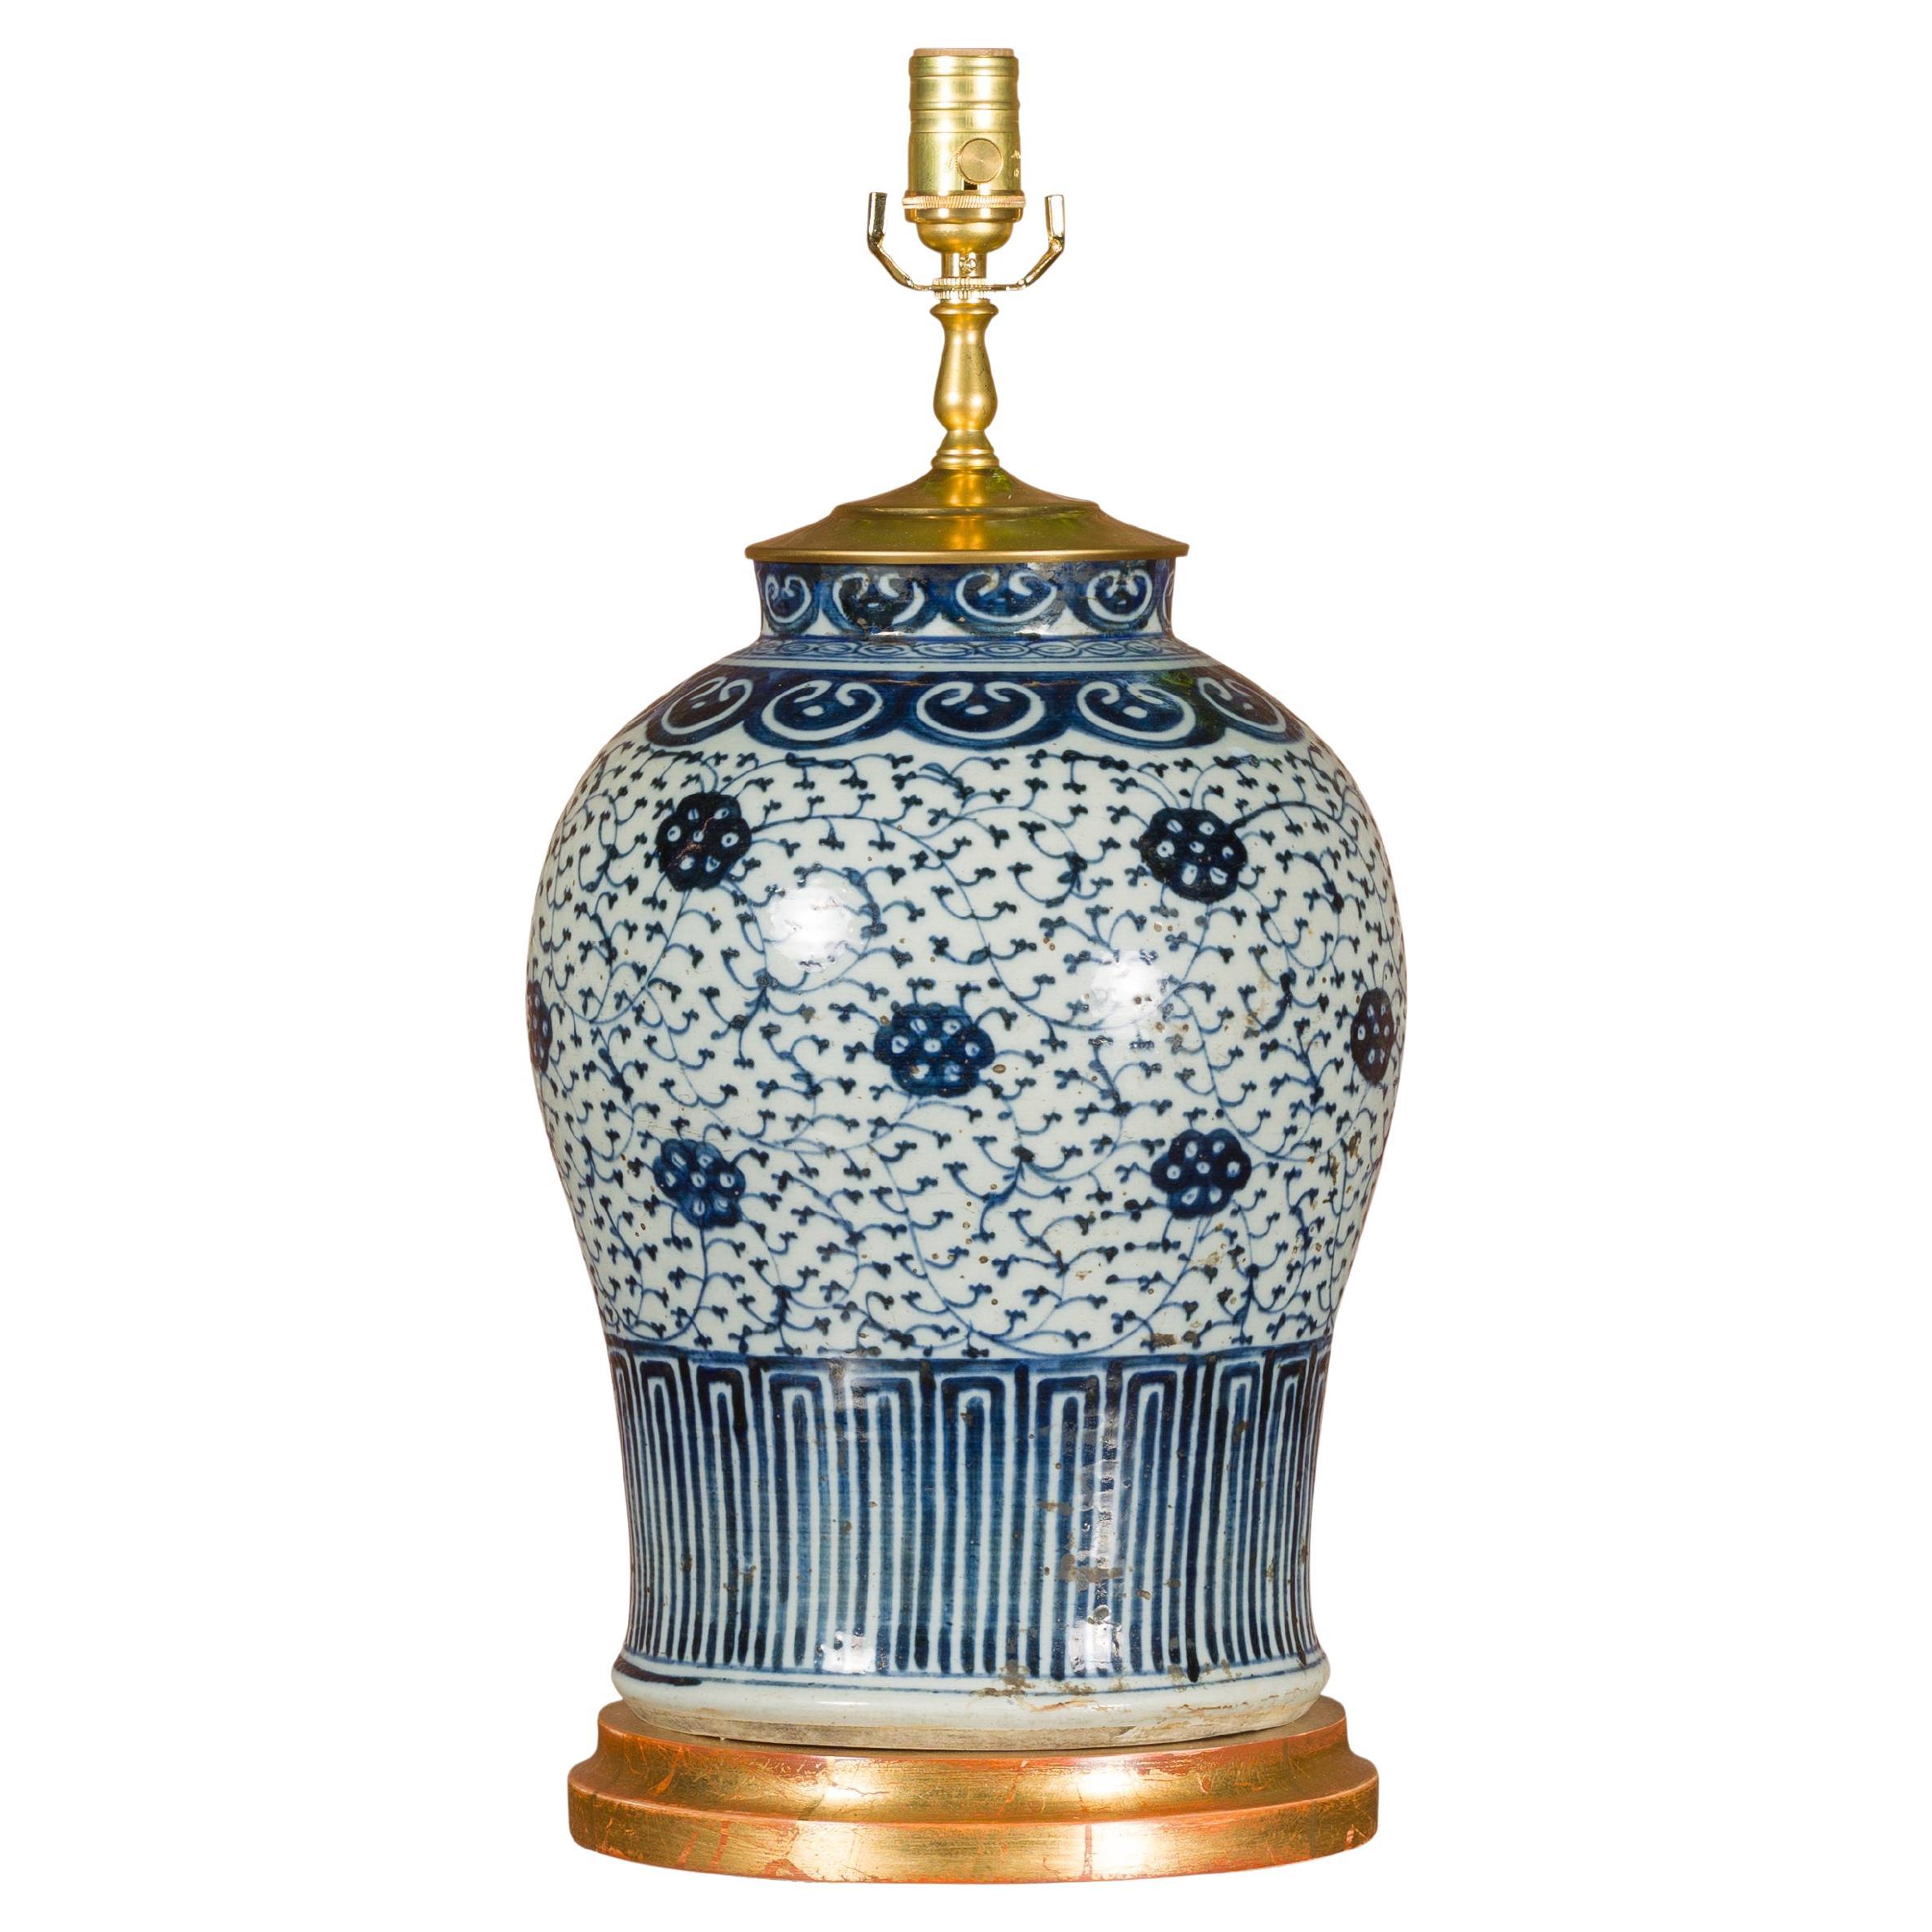 Vase de Delft du 18ème siècle transformé en lampe de table câblée américaine